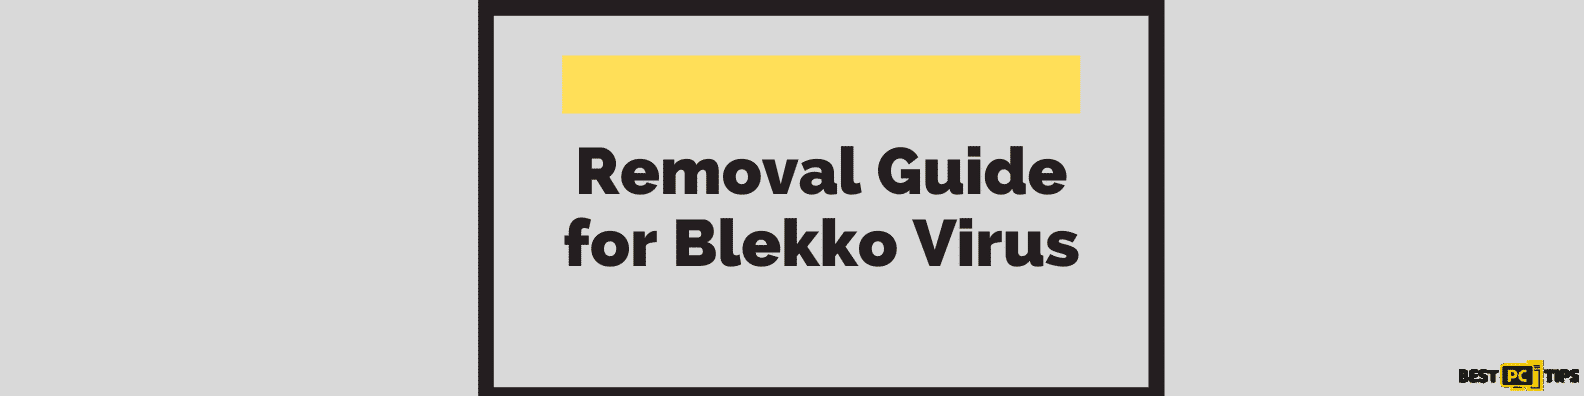 Blekko virus removal guide